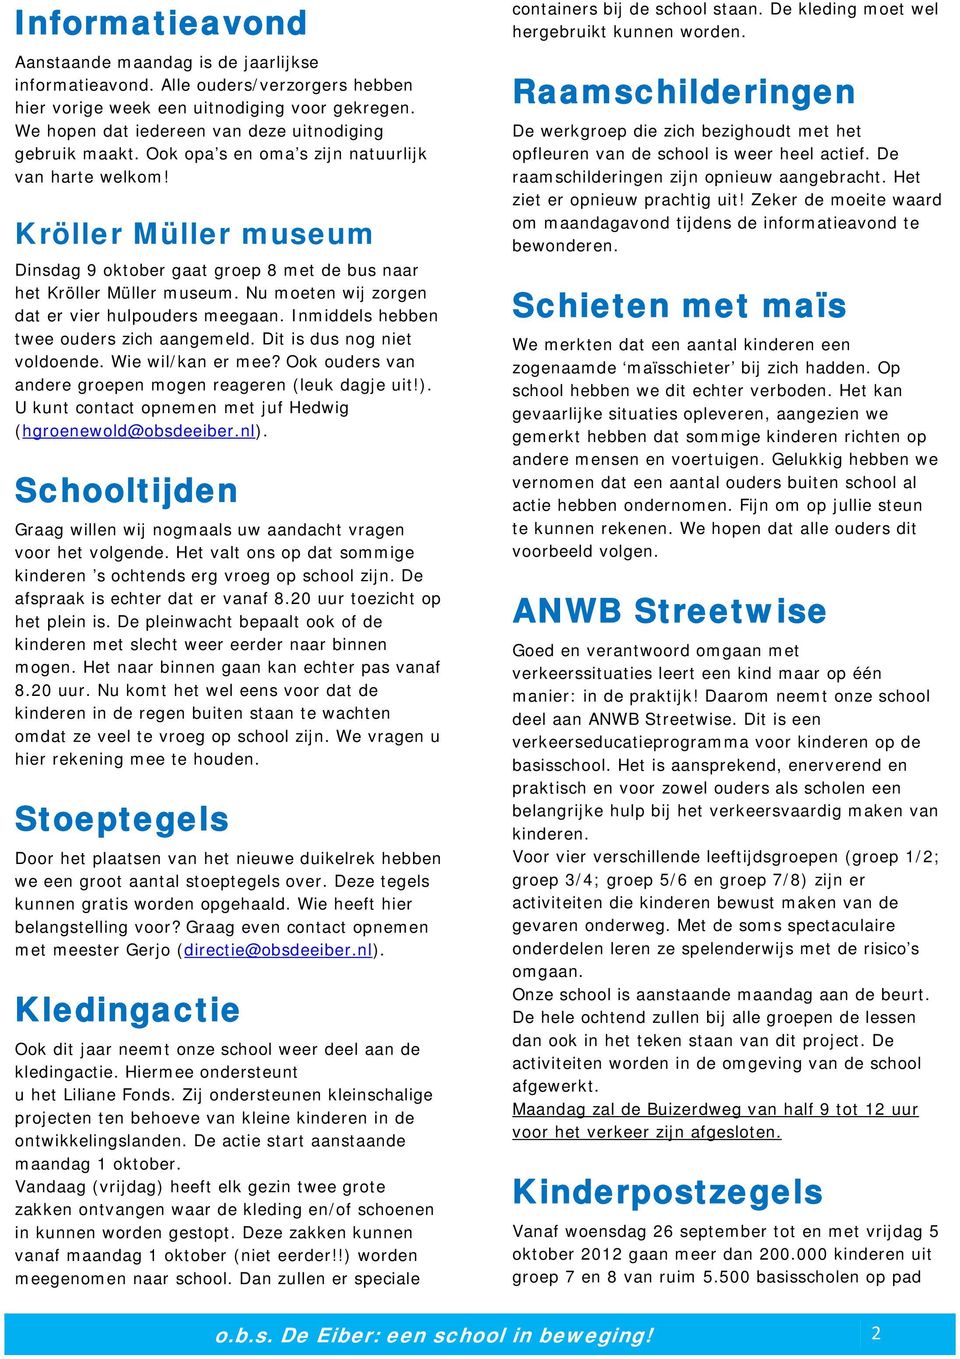 Kröller Müller museum Dinsdag 9 oktober gaat groep 8 met de bus naar het Kröller Müller museum. Nu moeten wij zorgen dat er vier hulpouders meegaan. Inmiddels hebben twee ouders zich aangemeld.